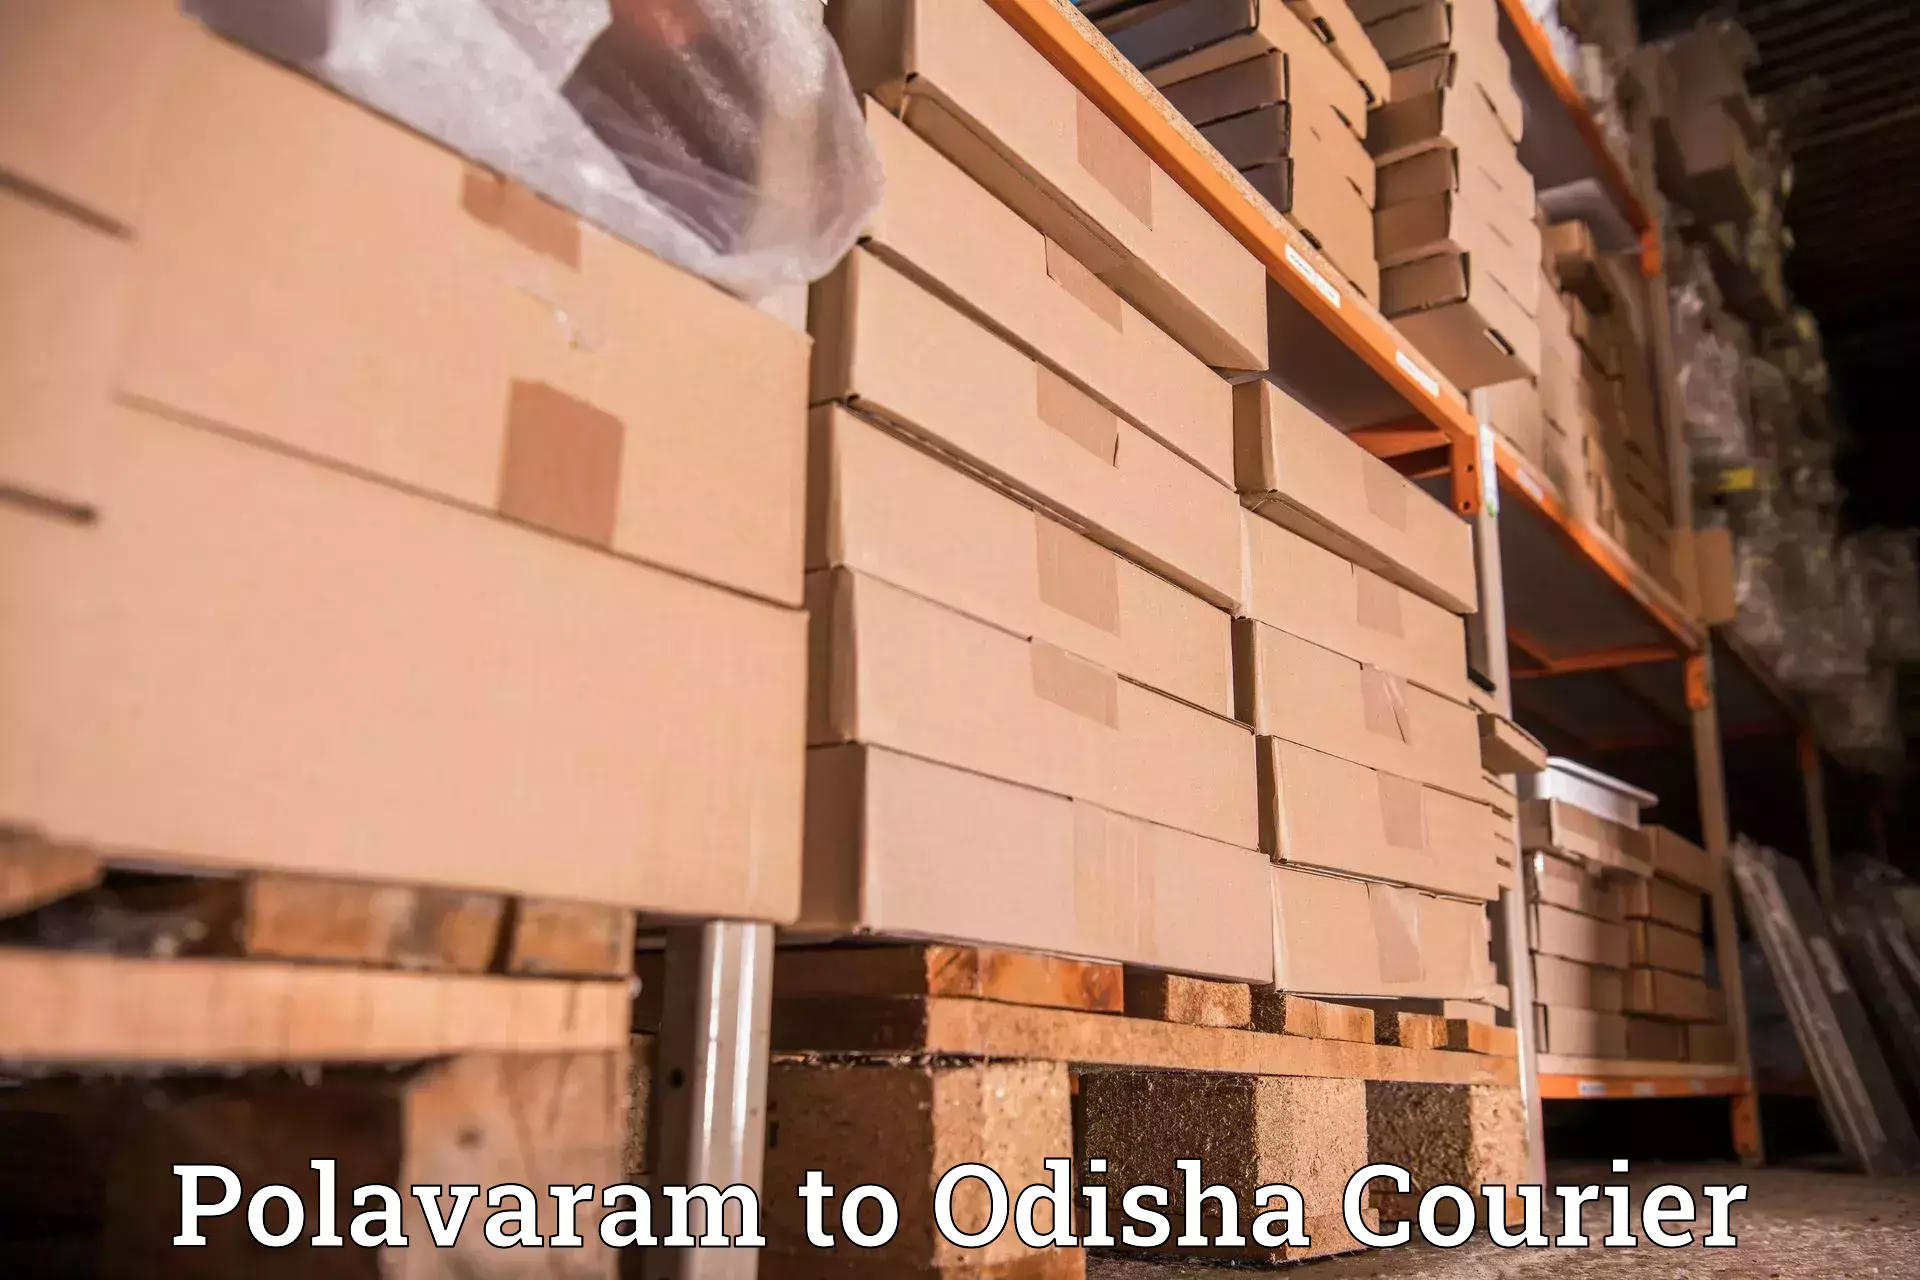 Overnight delivery services Polavaram to Gunupur